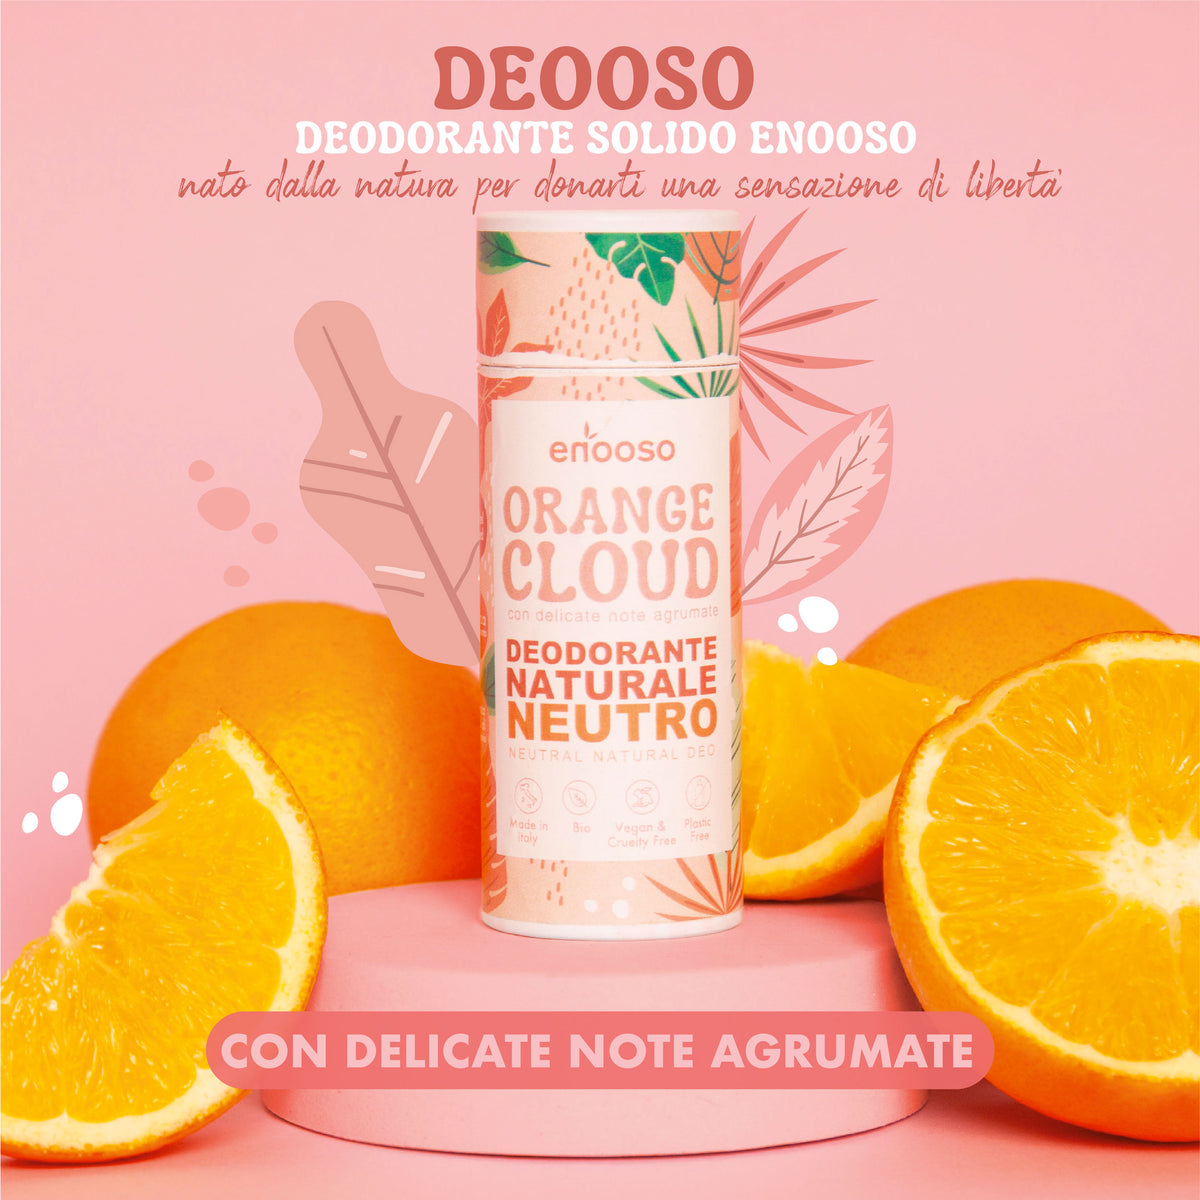 Deodorante Solido Neutro - Orange Cloud agli agrumi